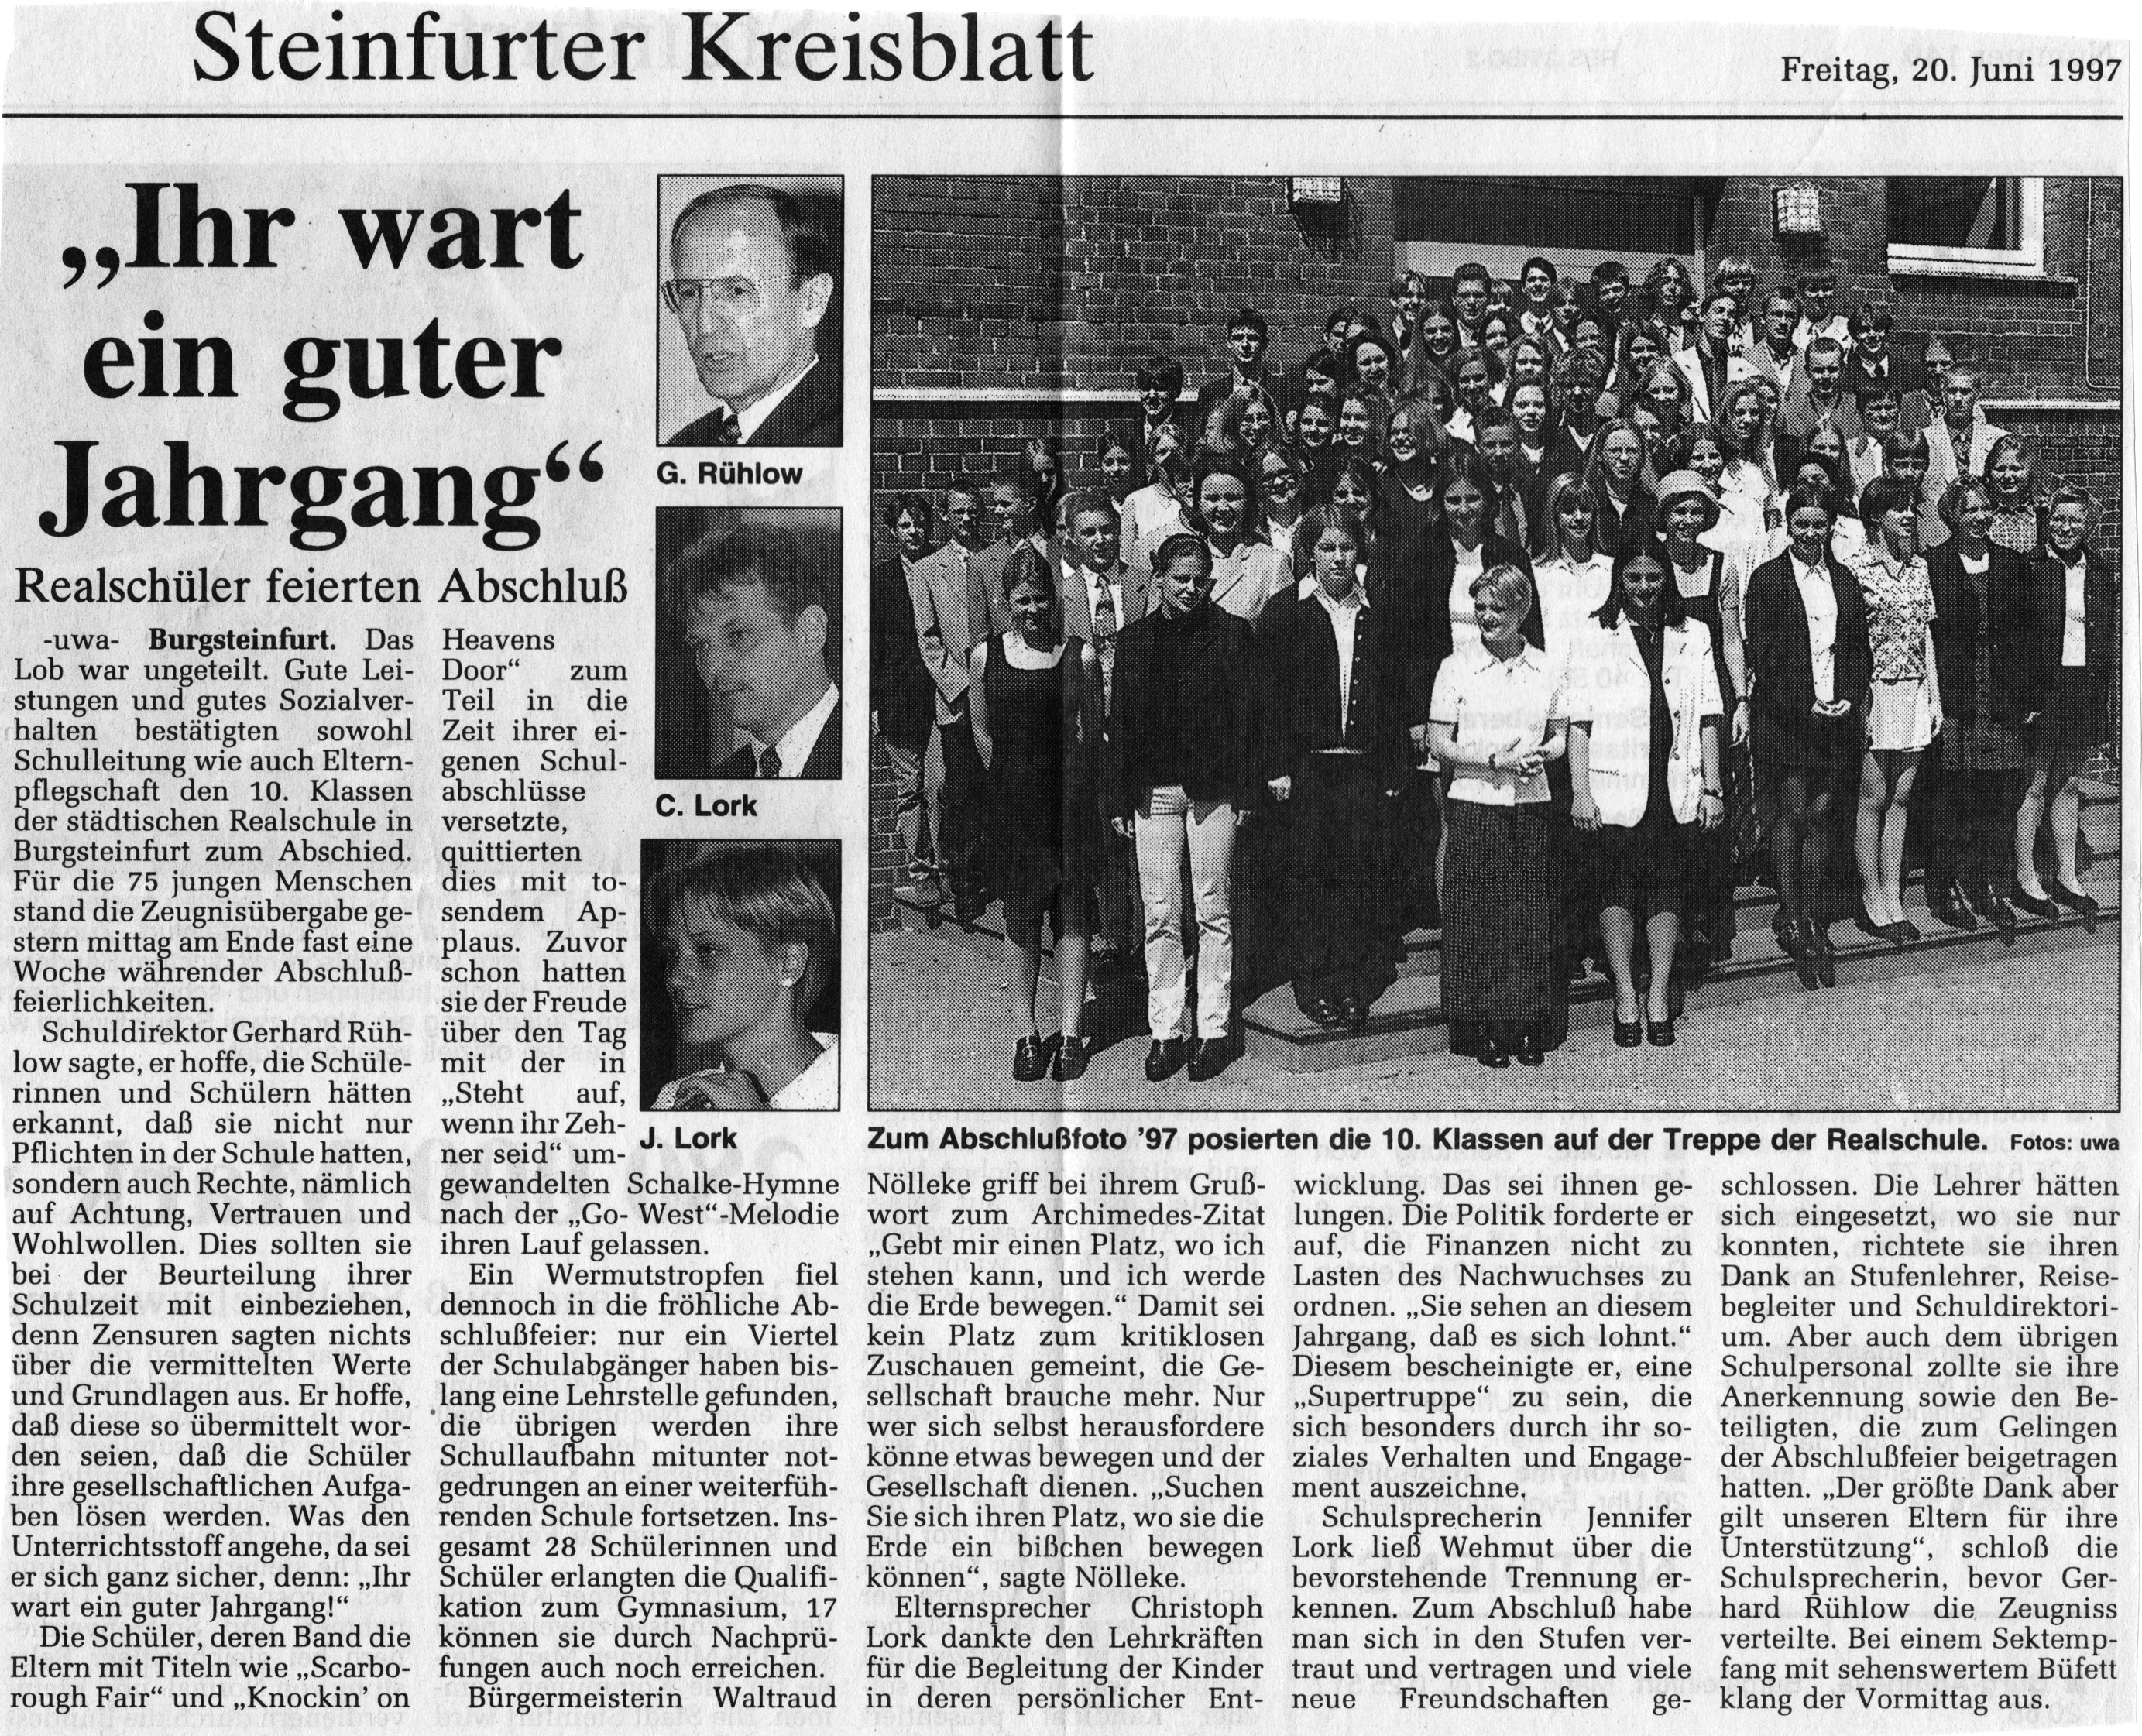 Zeitungsartikel Steinfurter Kreisblatt, 20. Juni 1997